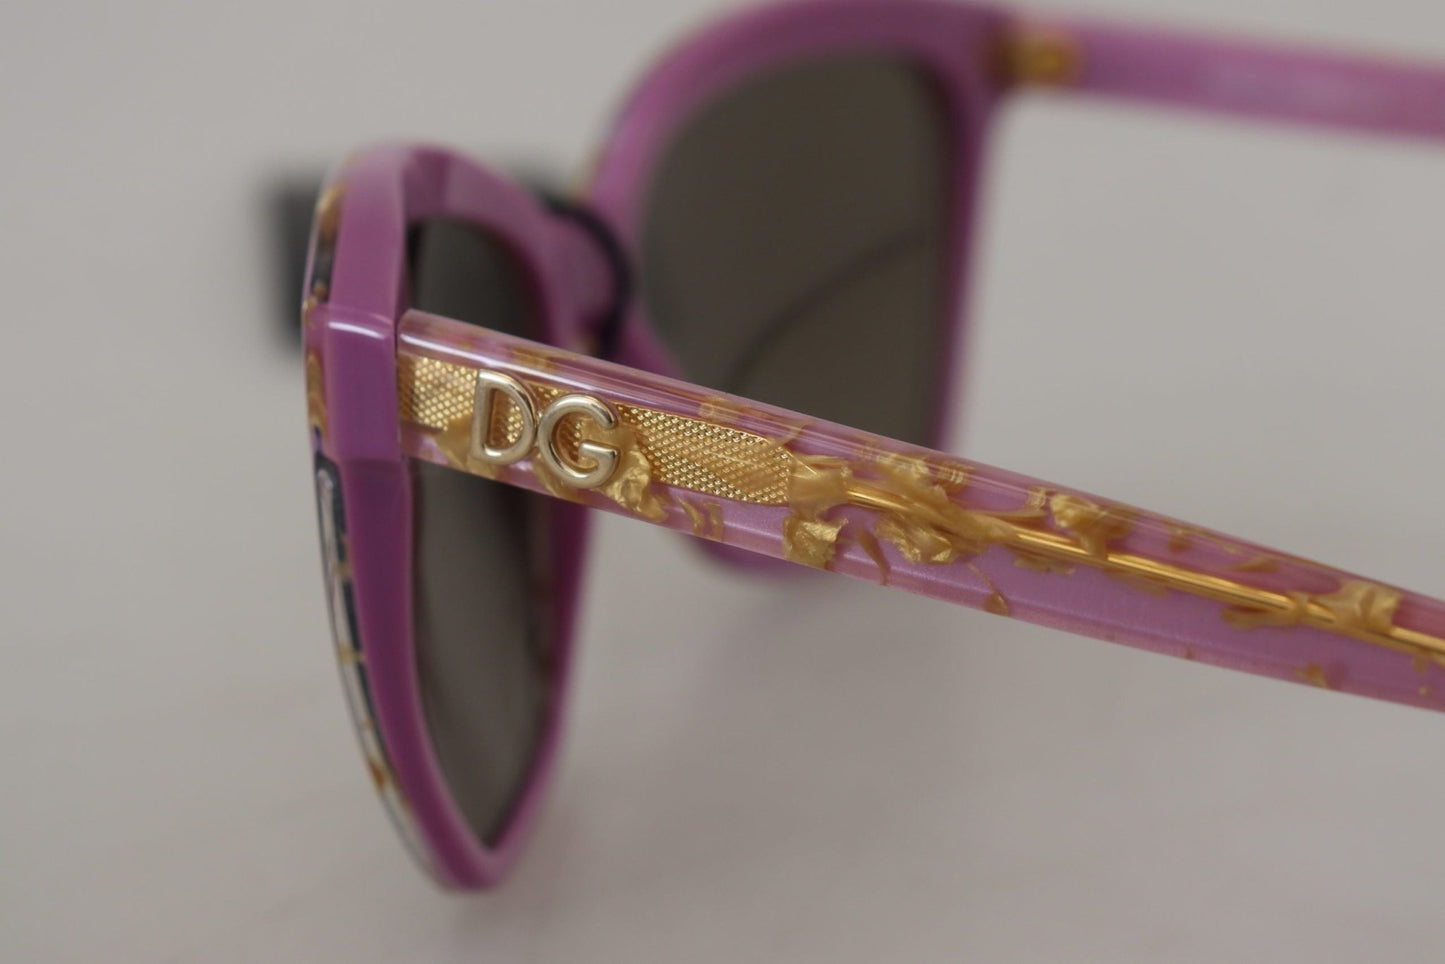 Dolce & Gabbana Violet Full Rim Rectangle Frame Shades DG4251 Sunglasses